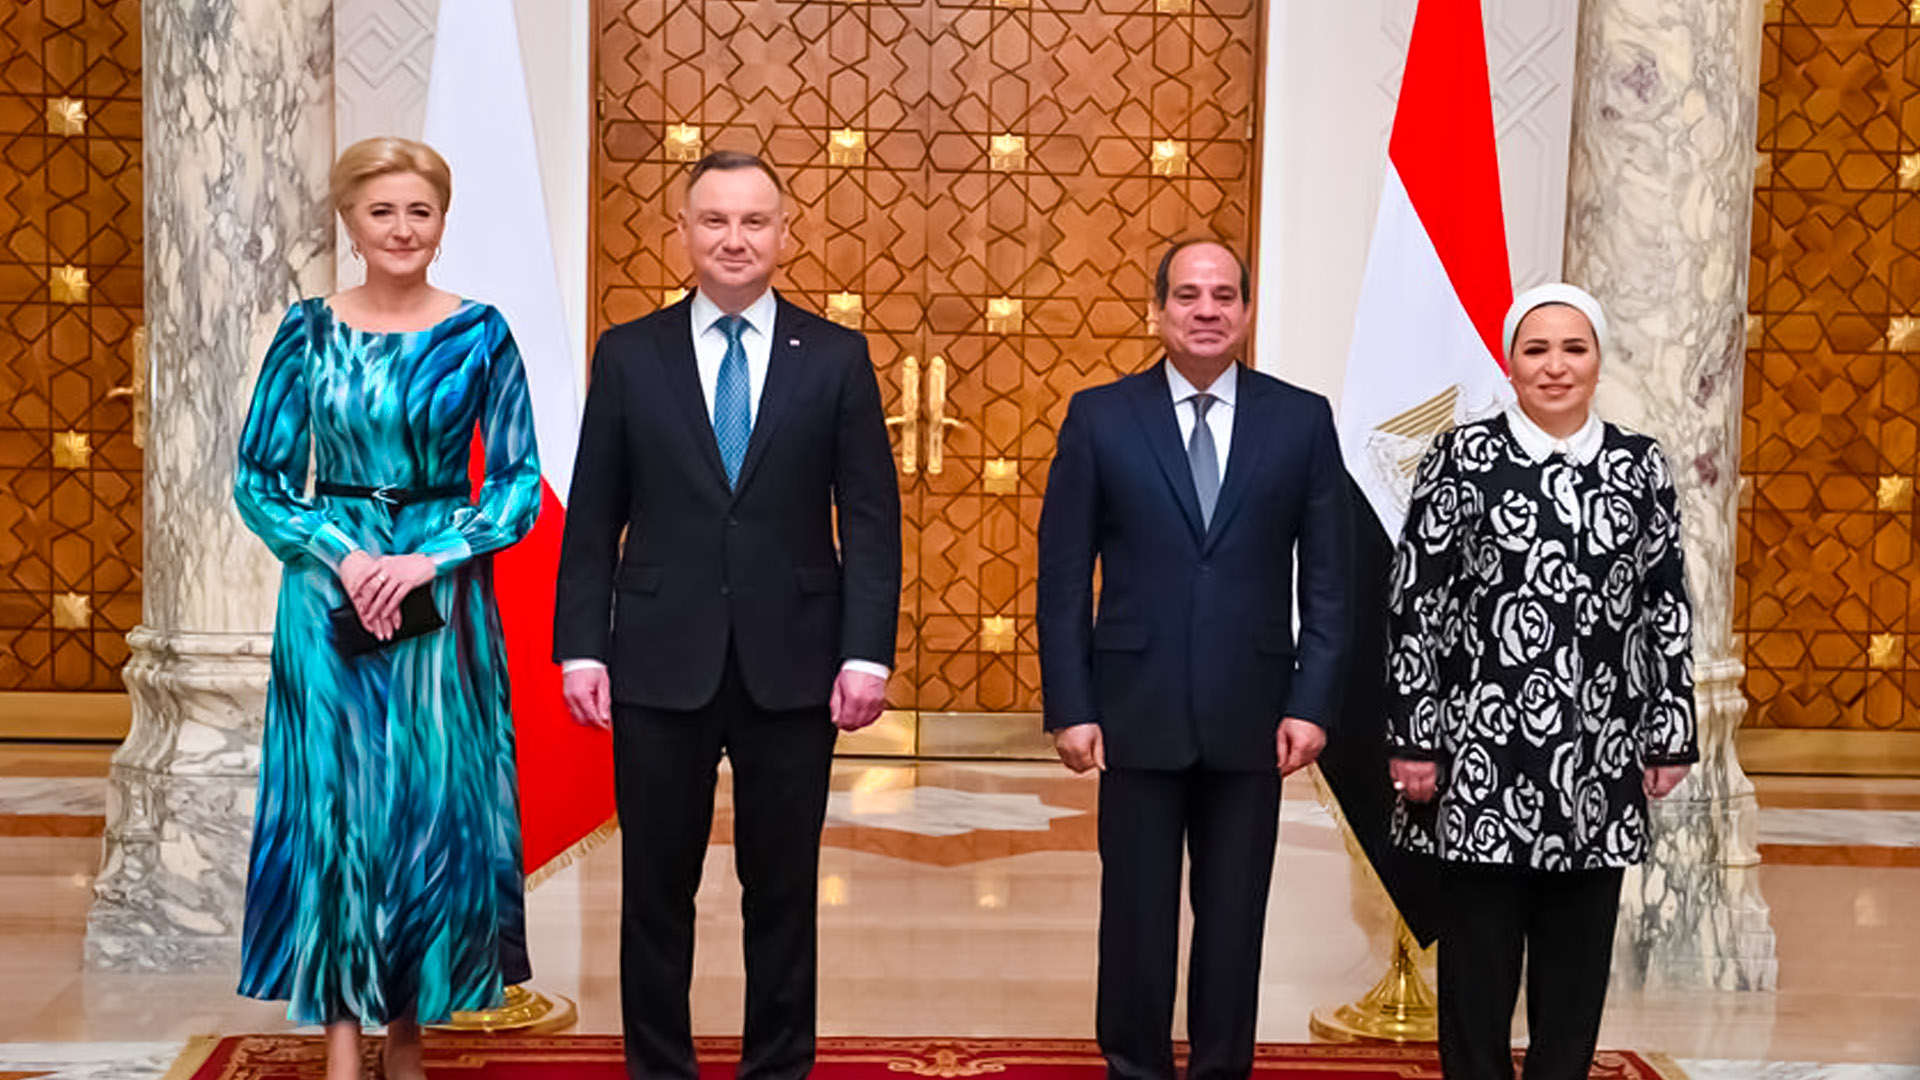 El-Sisi and First Lady receive Polish President and wife at Ittihadiya Palace